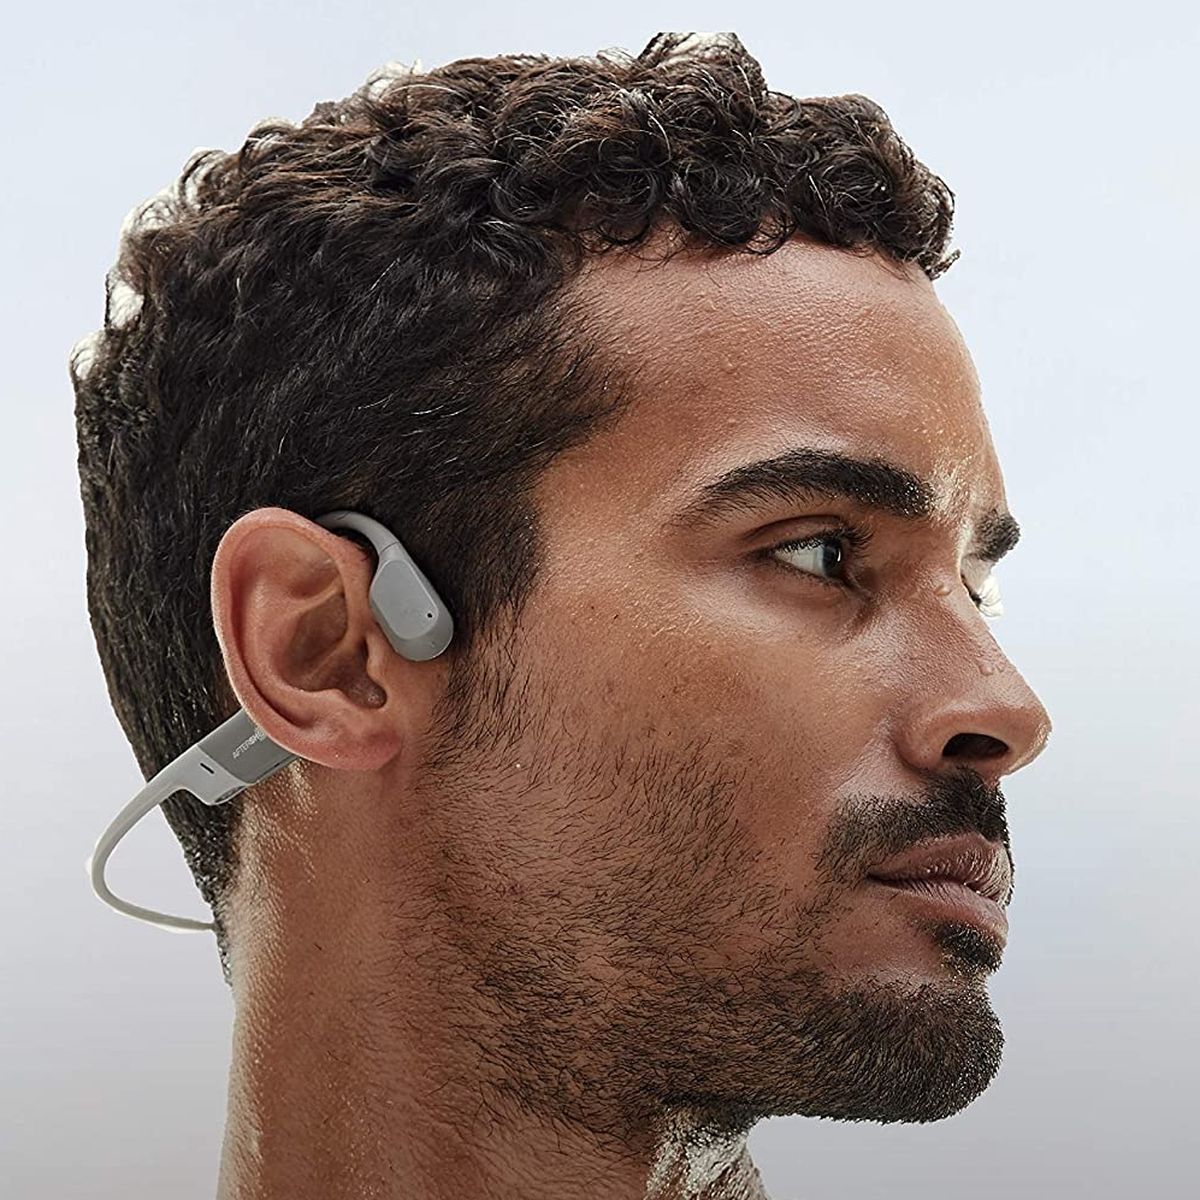 Aeropex, auriculares de conducción ósea que no dañan el oído